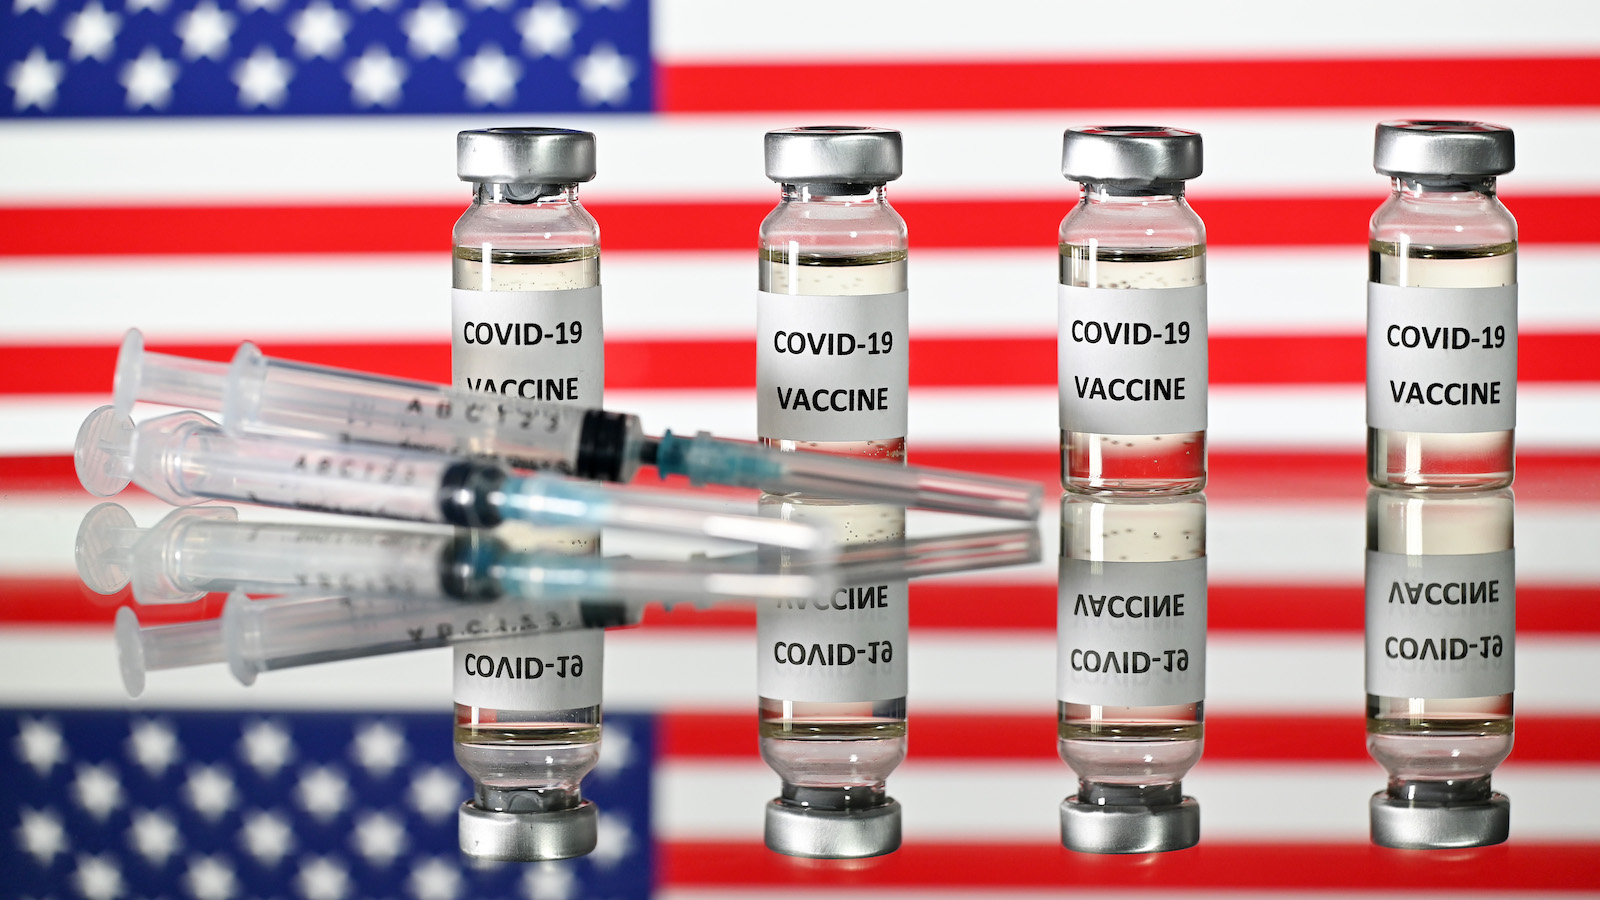 Preguntas de la audiencia sobre el coronavirus: ¿Hay que volver a vacunarse con algún antígeno permitido por EE.UU. para entrar al país?